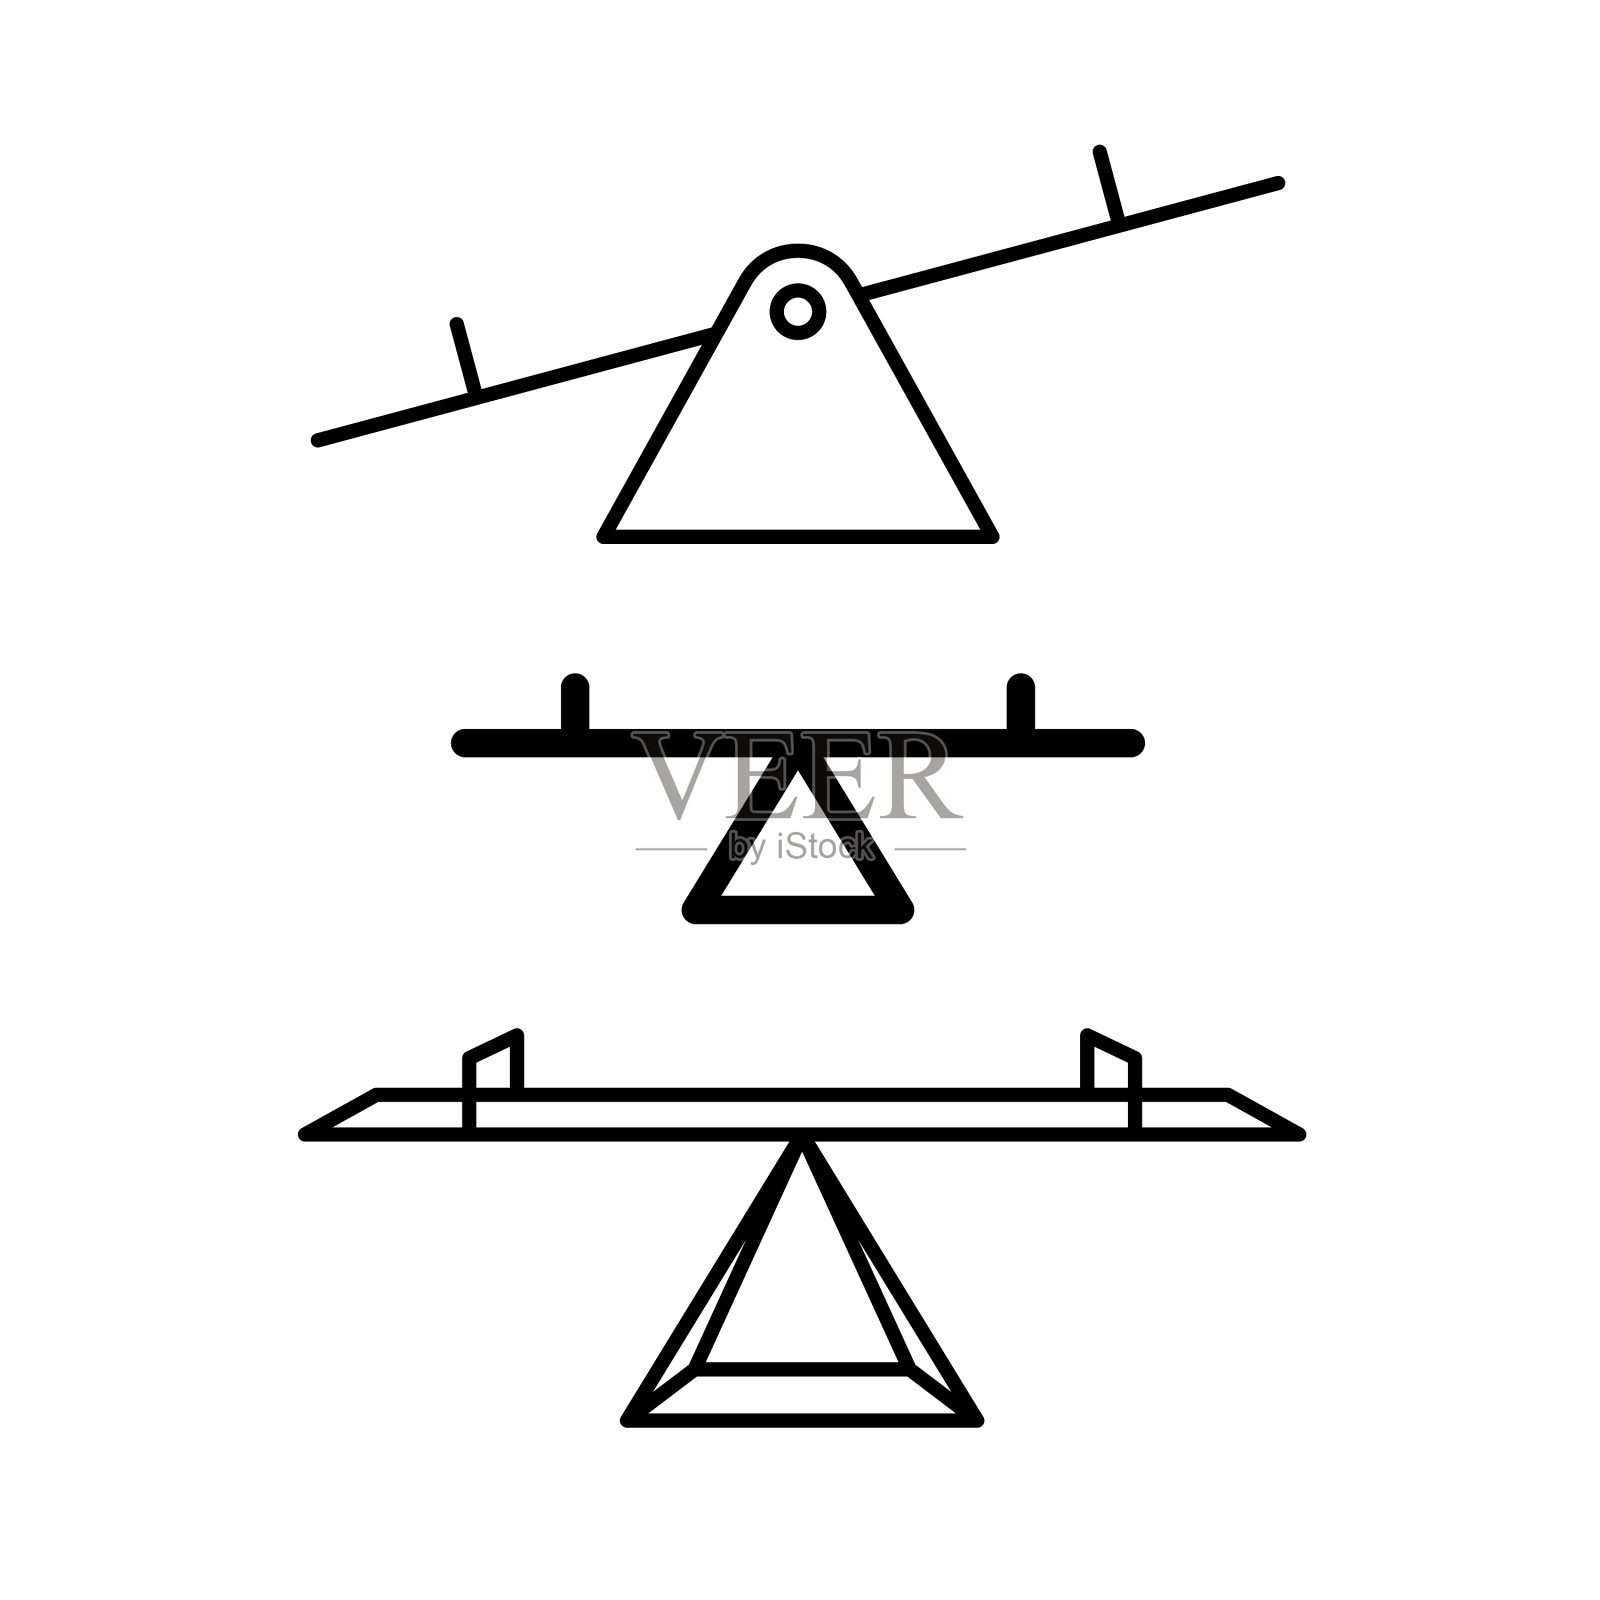 跷跷板平衡图标三条锯线风格图标素材